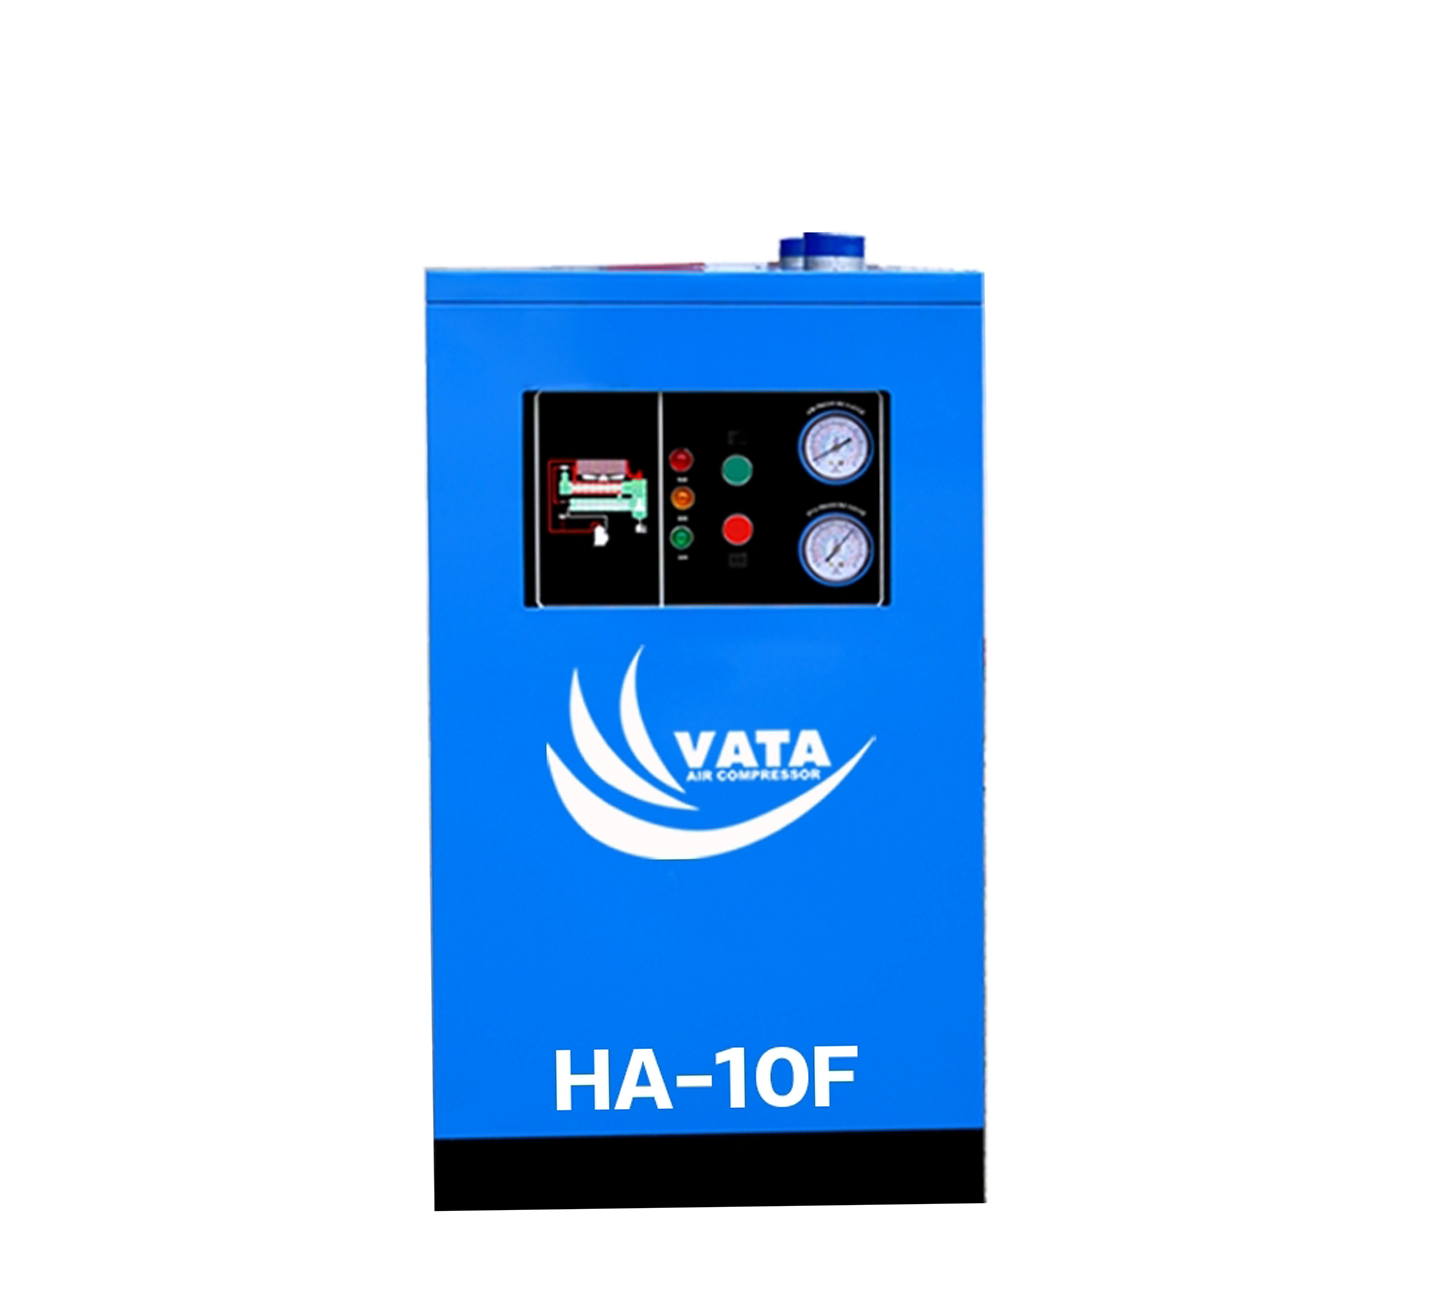 เครื่องทำลมแห้ง Refrigerated Air Dryer แบรนด์ VATA รุ่น HA-10F ขนาด 0.4 kw. ไฟฟ้า 220V รับประกันสินค้า 1 ปี ตามเงื่อนไขของบริษัทฯ